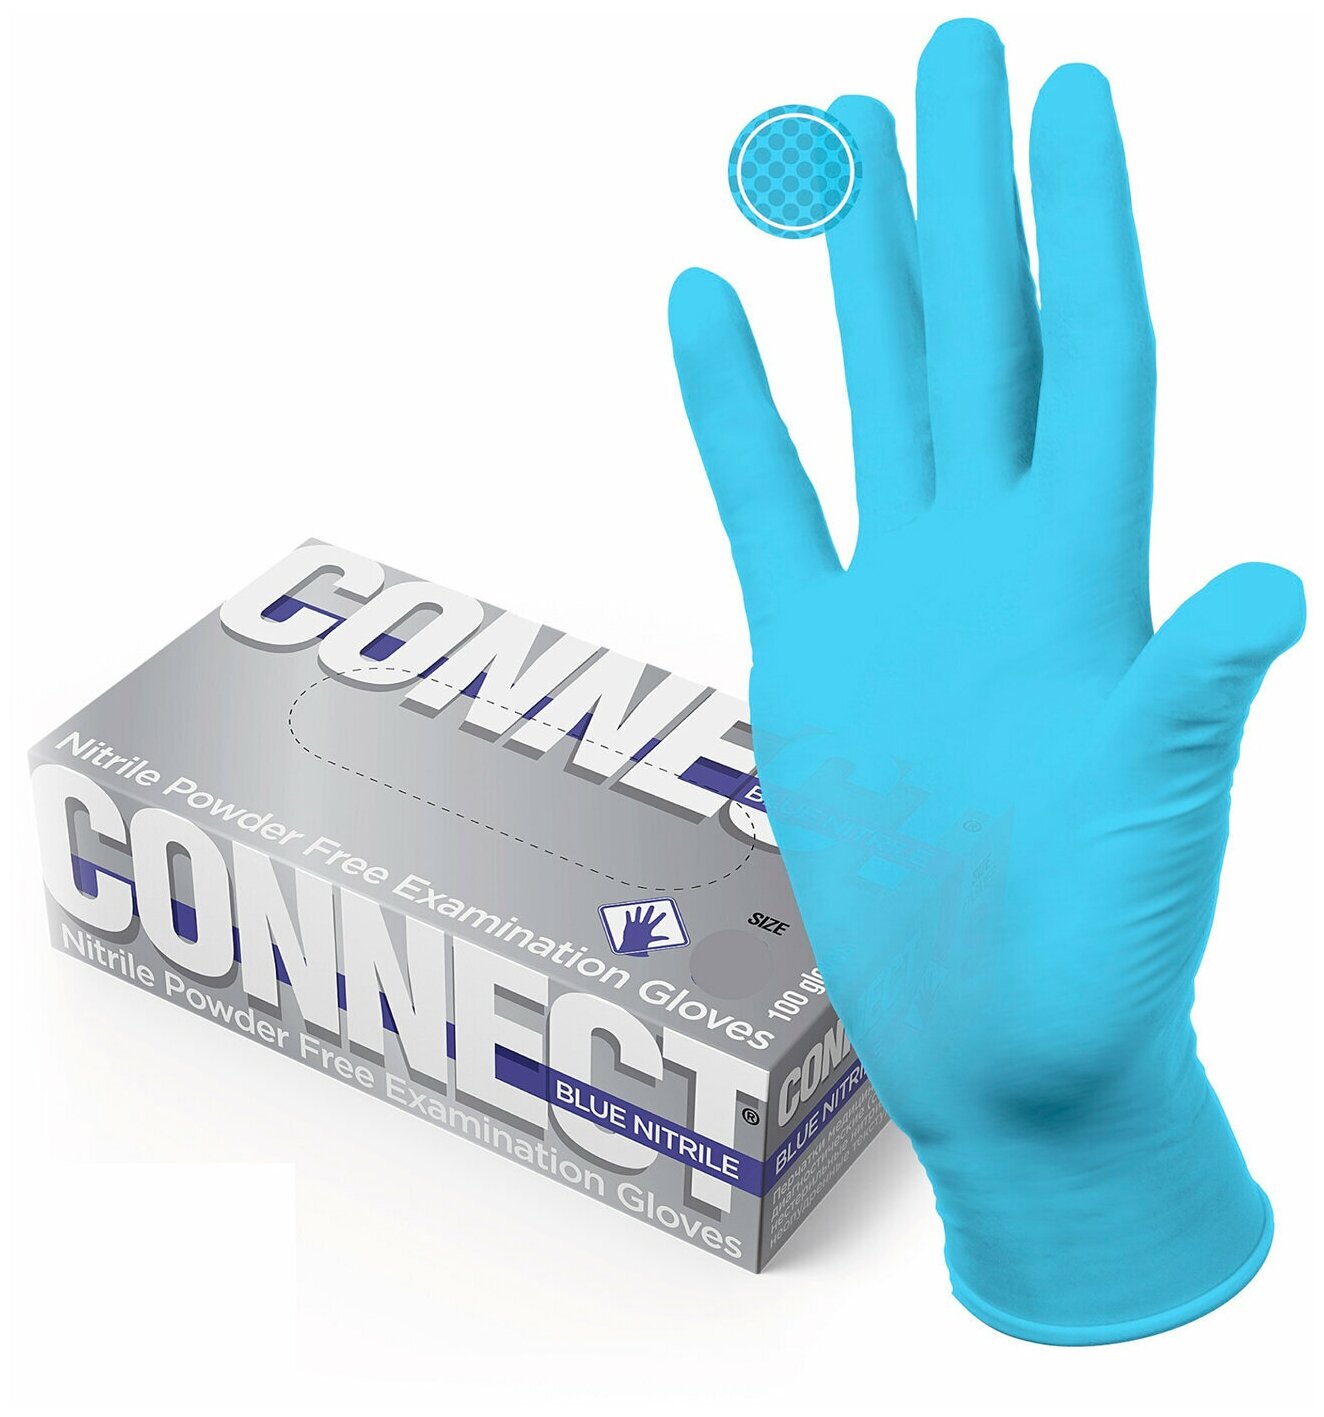 Перчатки смотровые нитриловые CONNECT, голубые, 50 пар (100 штук), размер XL (очень большие), - В комплекте: 1шт.